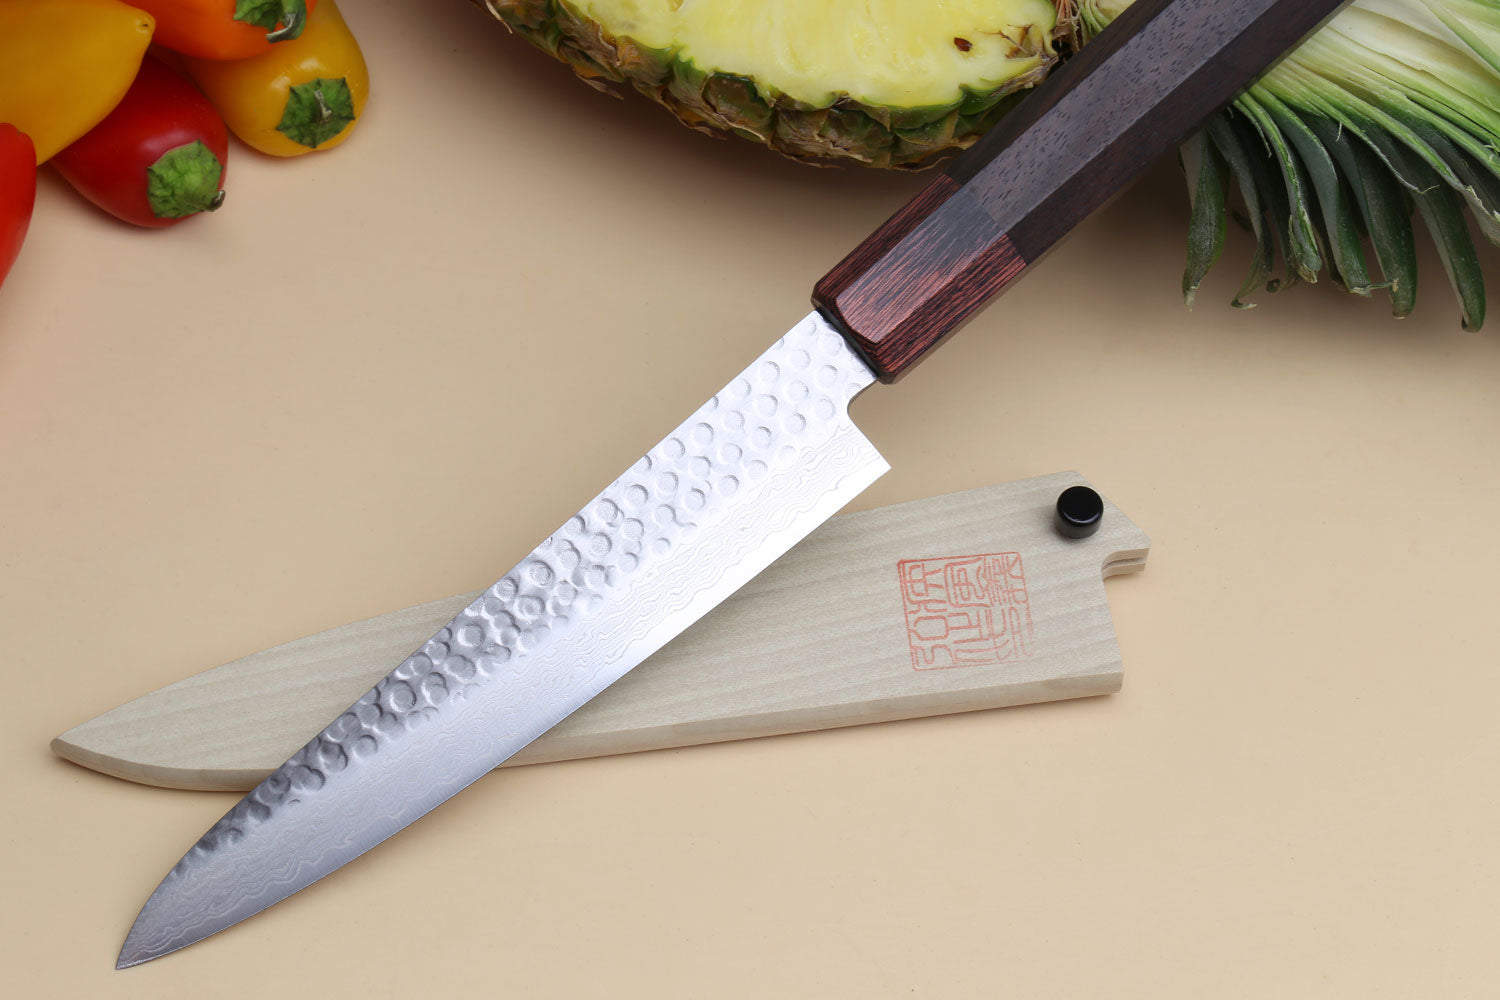 Wakoli EDIB 6-pcs Damascus Knife Set I Professional Kitchen Knives made of  Japanese Damascus Steel VG10 Chef Knife Set with Pakka Wood Handle in Gift